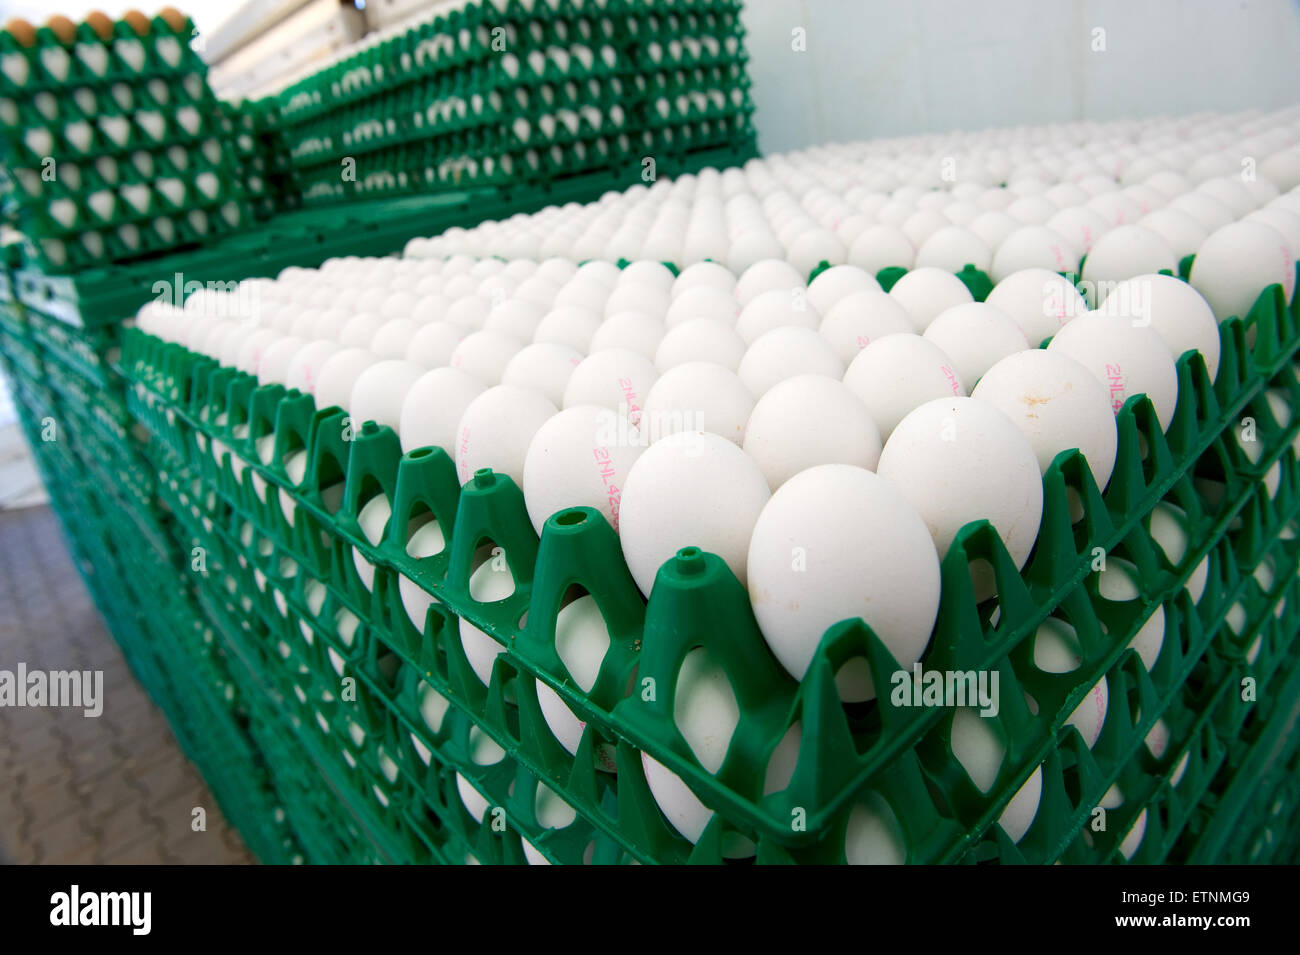 Oeufs blancs dans des caisses en plastique vert prêt à être transportés à partir d'un élevage de poulets Banque D'Images